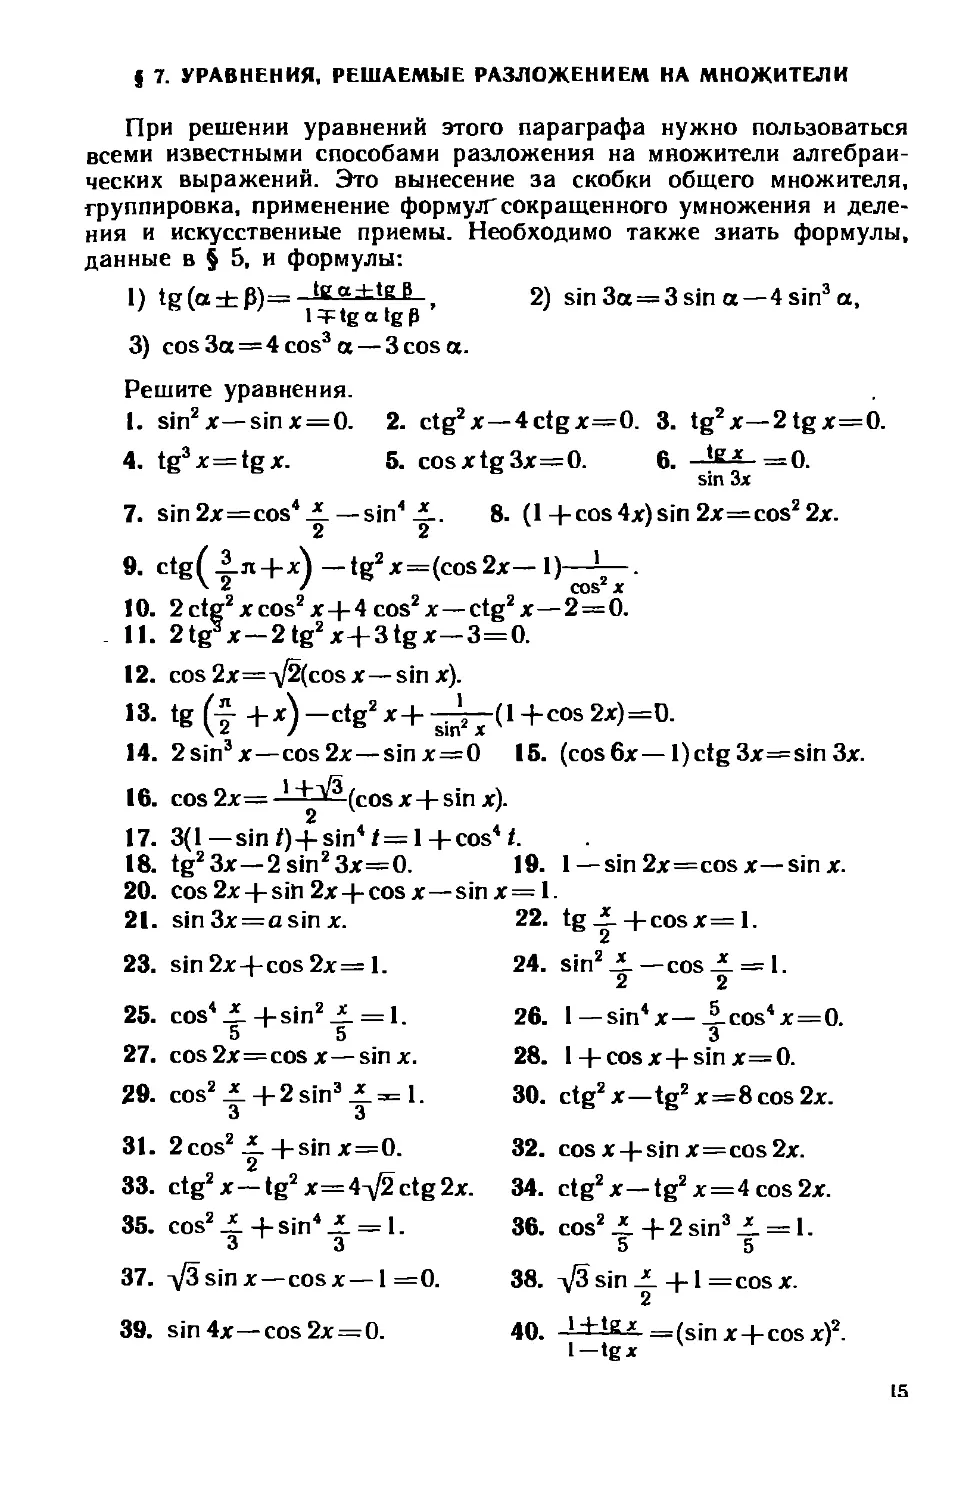 § 7.Уравнения, решаемые разложением на множители